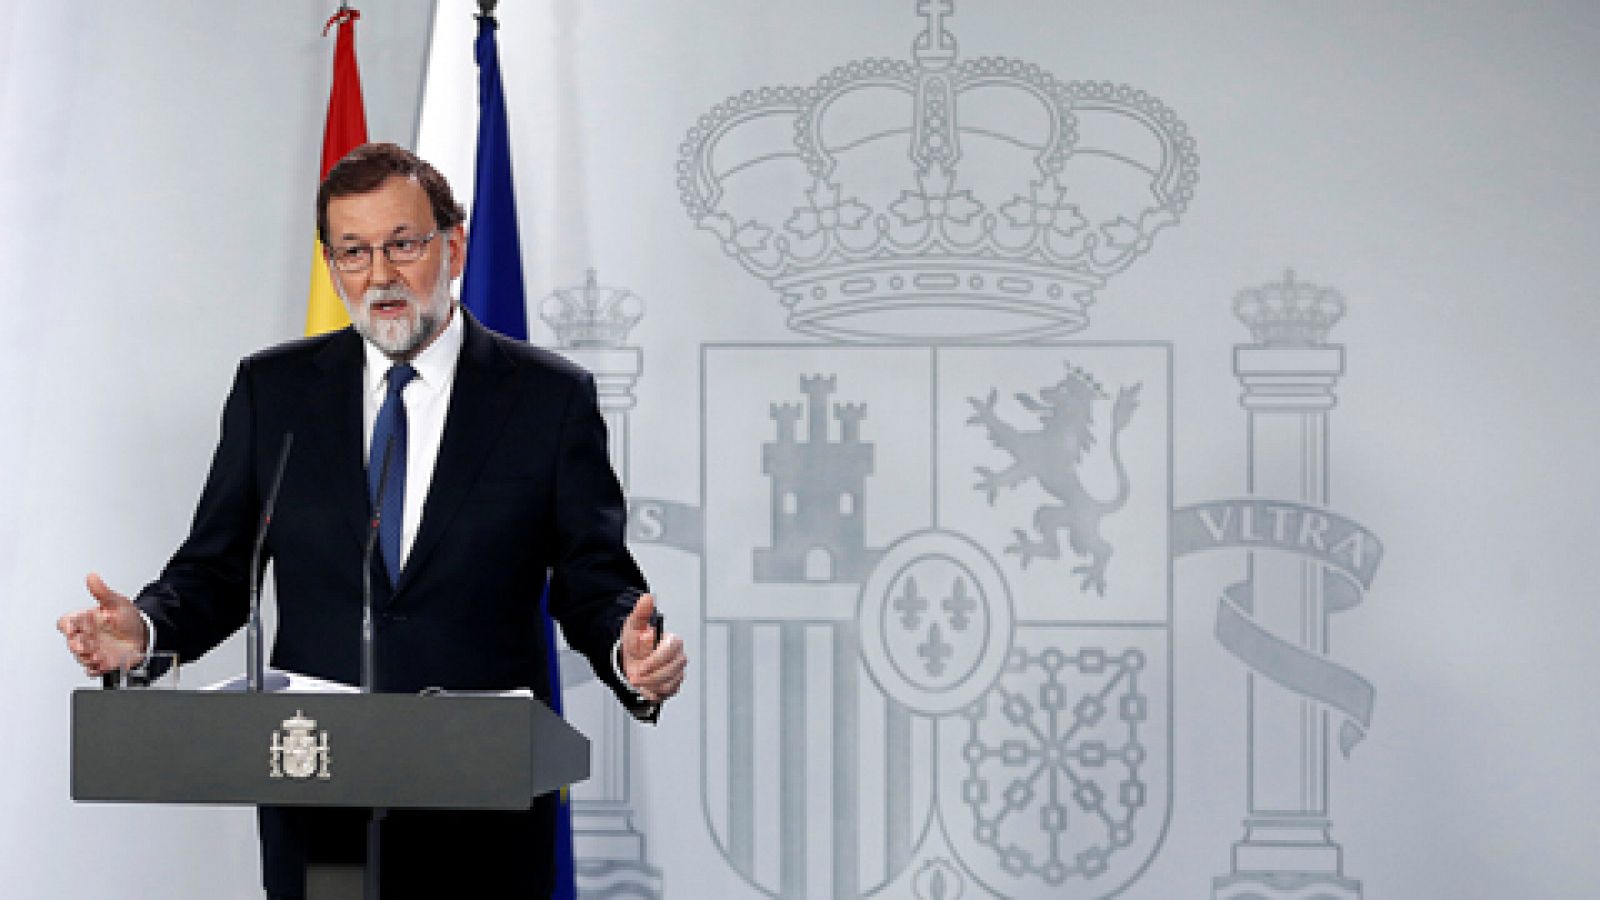 Rajoy pone en marcha el 155: "No se suspende la autonomía, sino a las personas que han puesto el autogobierno fuera de la ley"